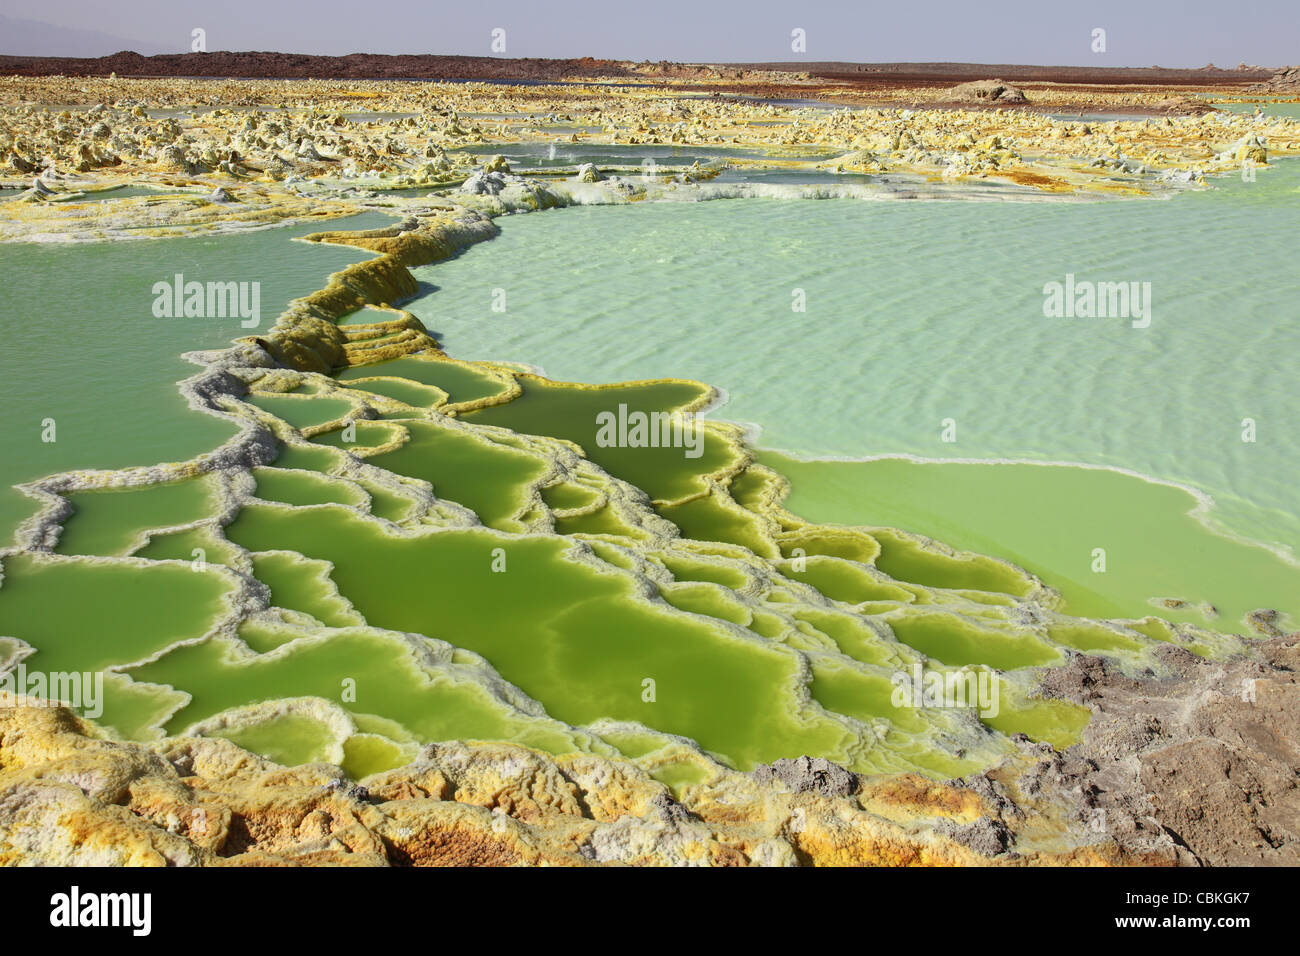 Zone géothermique Dallol, sinter exposée comme les structures dans les gisements de sel de potassium formé par la saumure hot springs, en Éthiopie. Banque D'Images